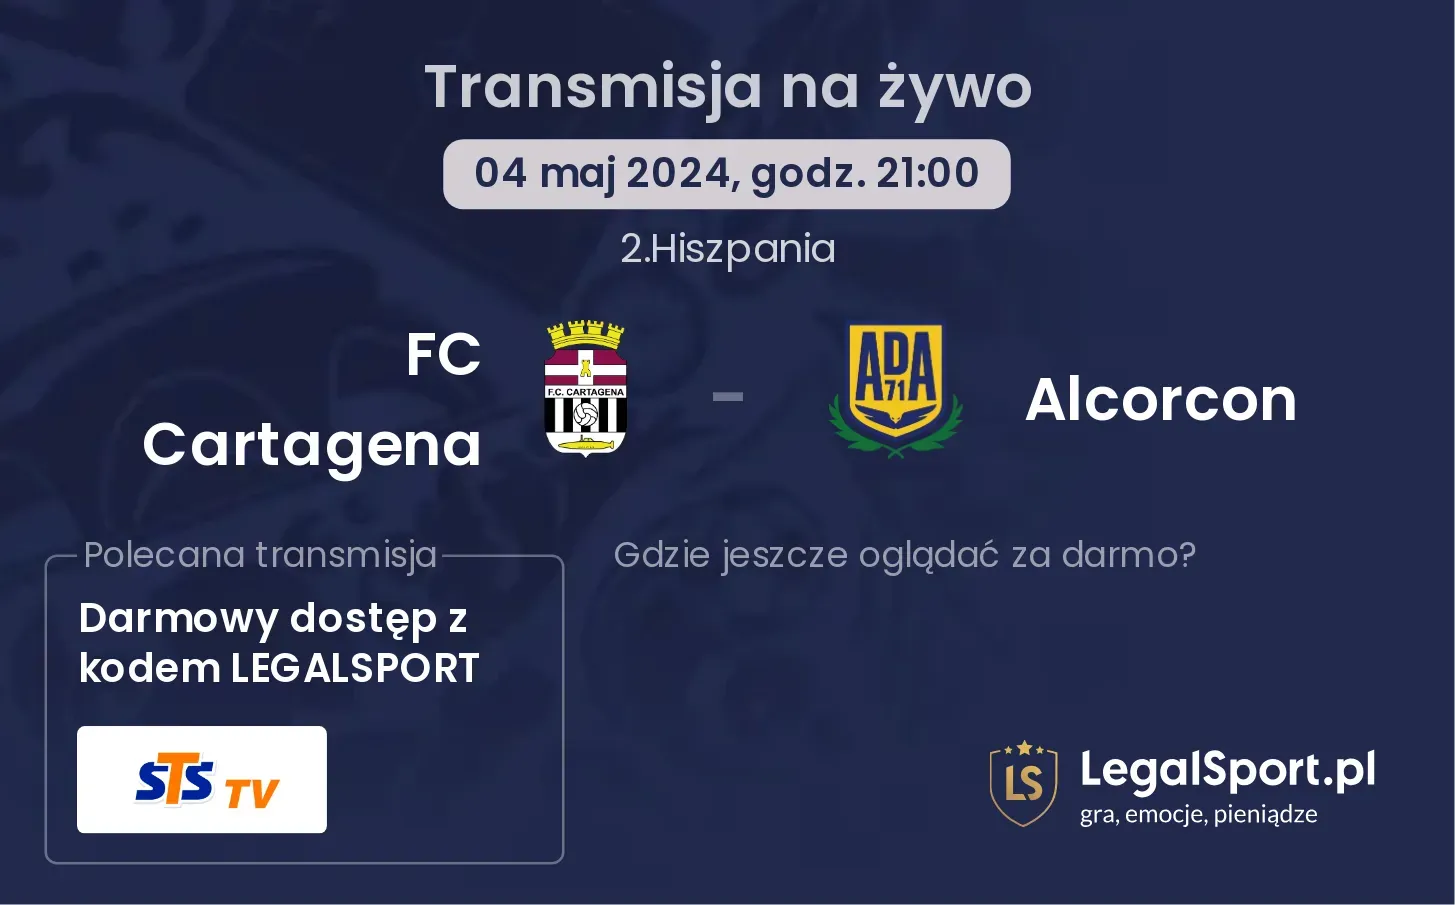 FC Cartagena - Alcorcon transmisja na żywo